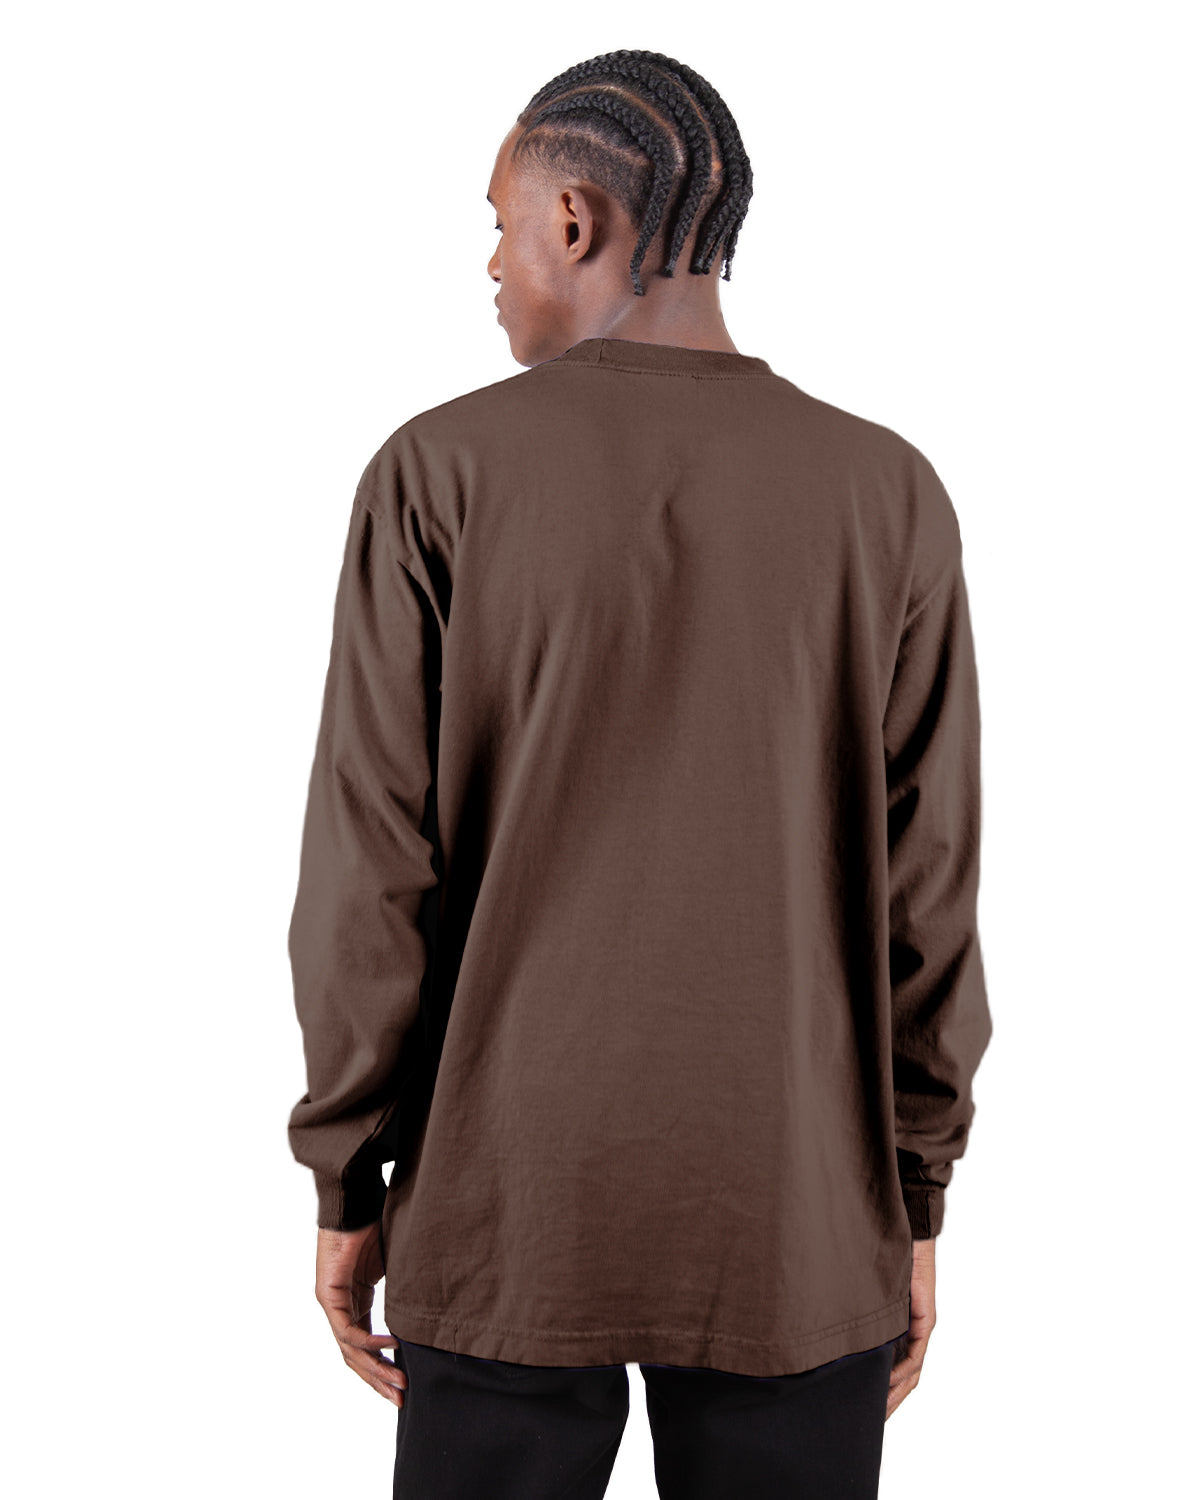 Garment Dye Sleeve – Shakawear.com